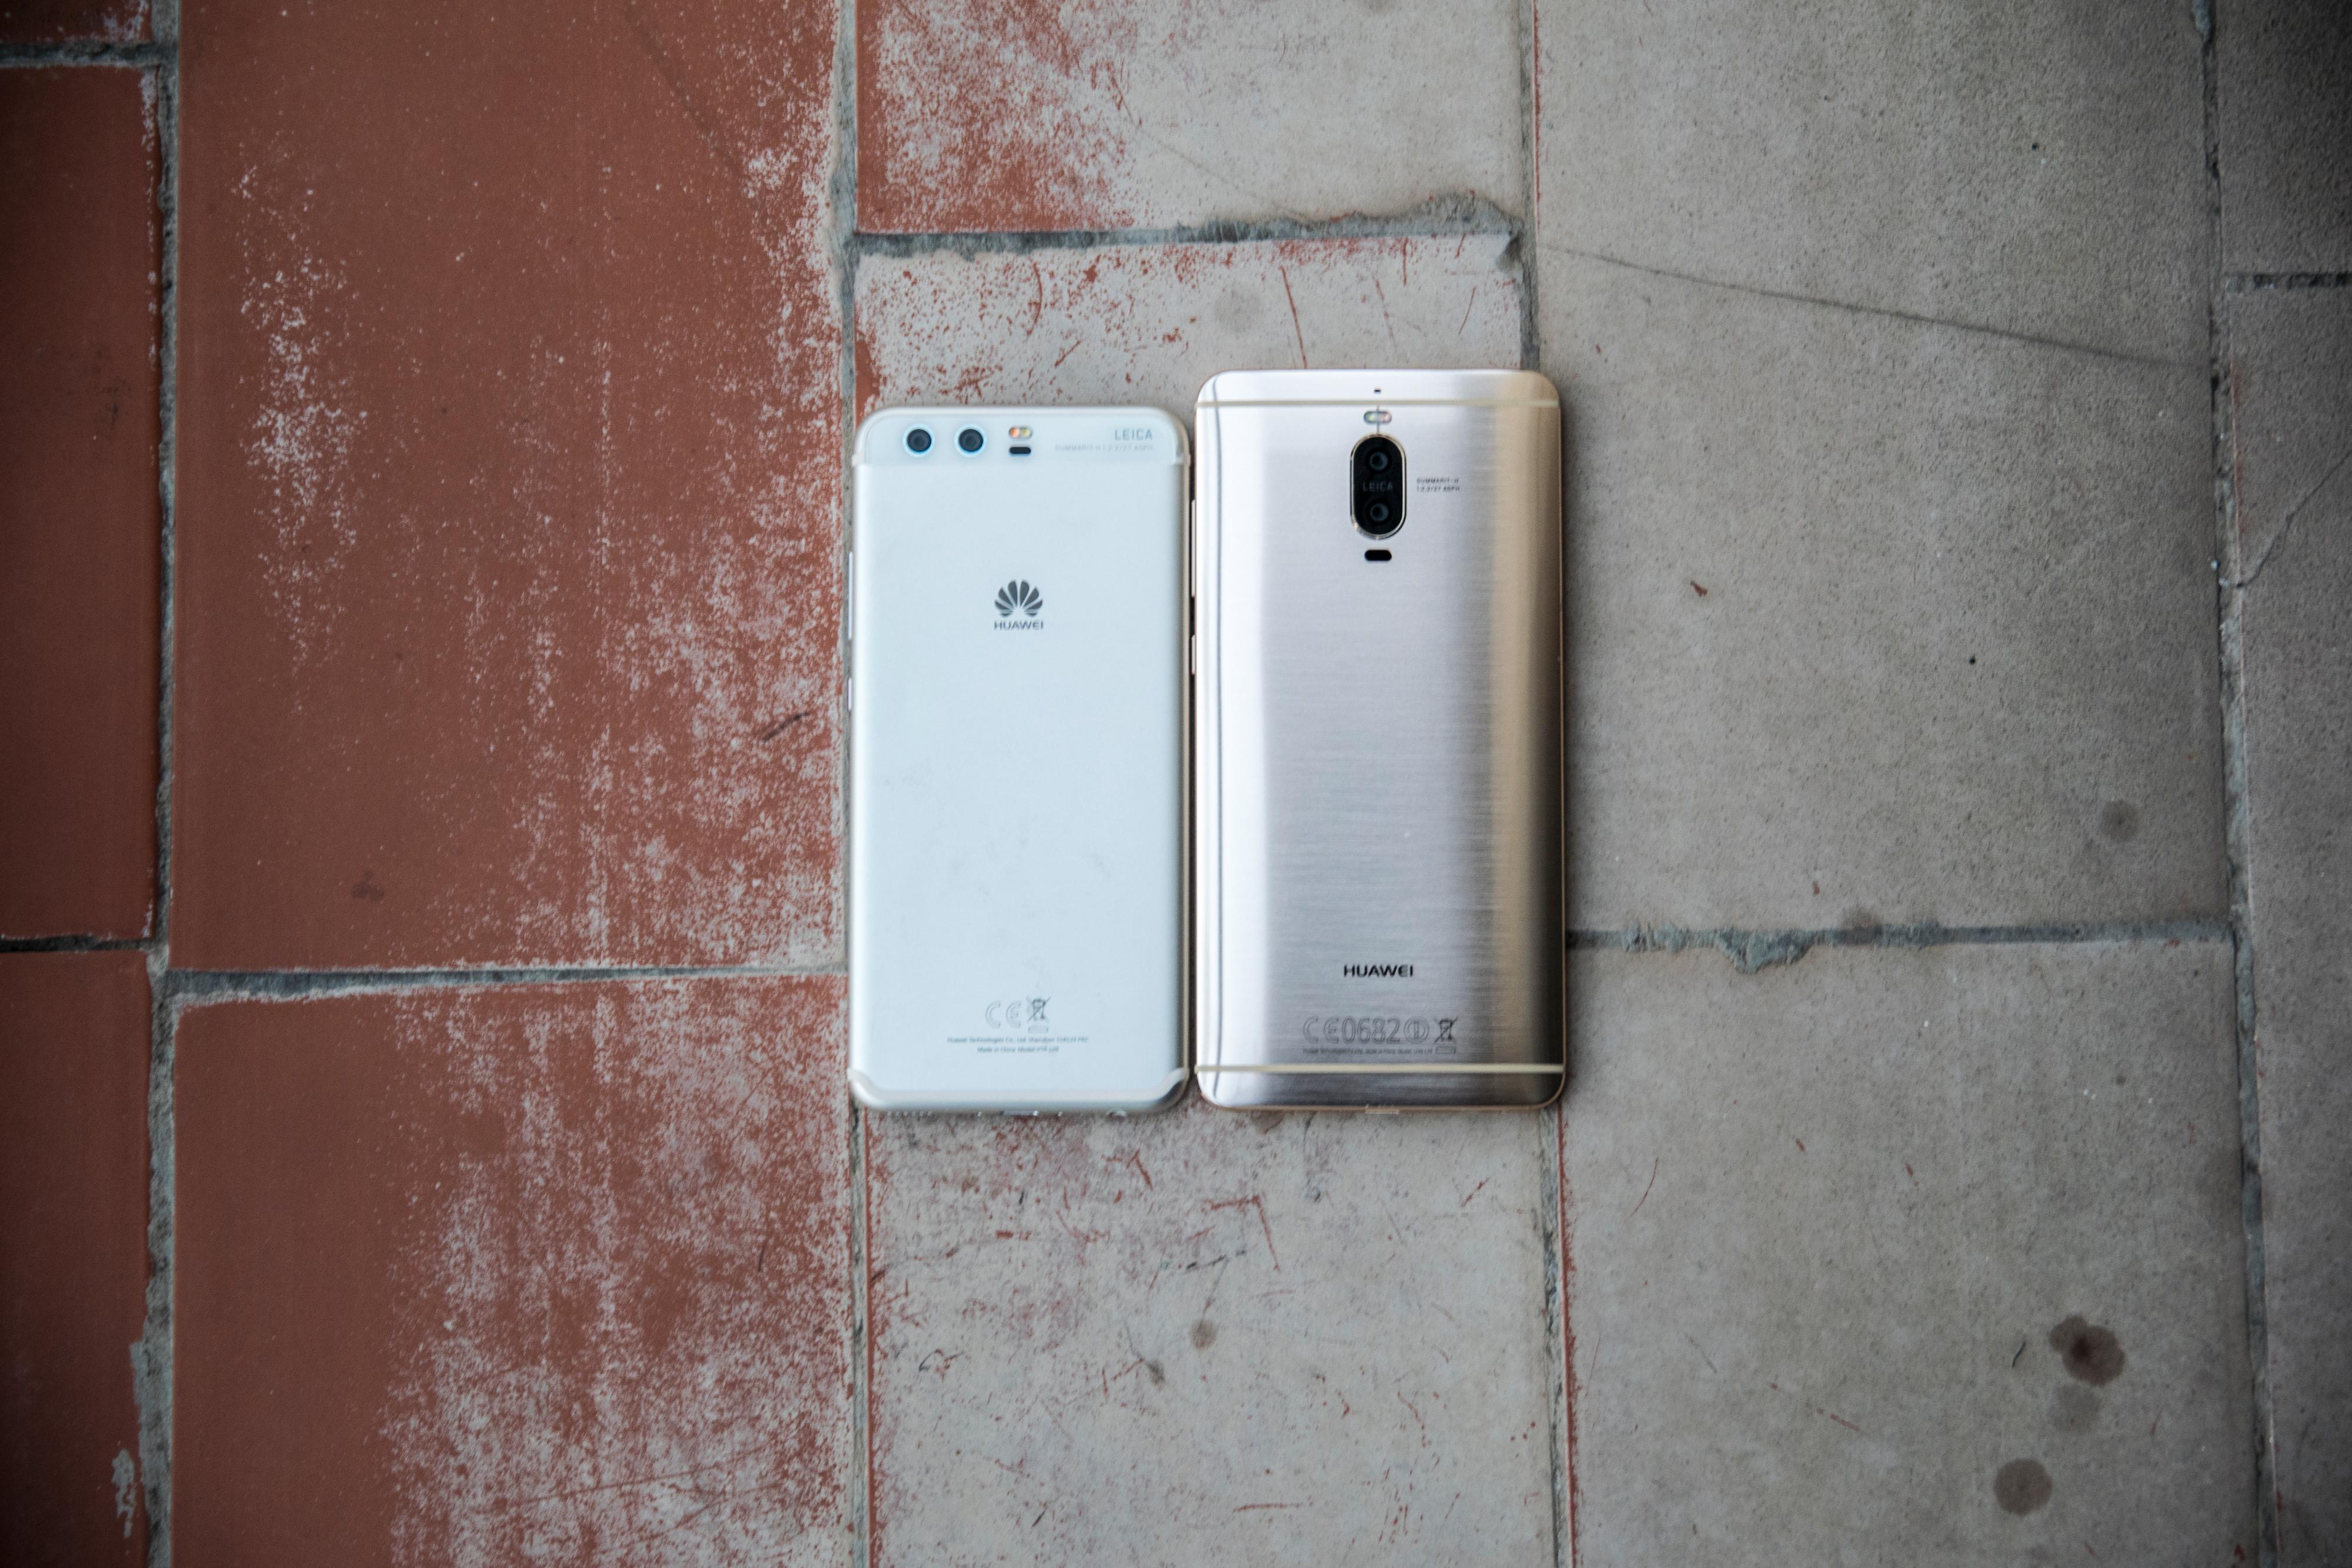 Huawei P10 til venstre, Huawei Mate 9 Pro til høyre. Har du ikke sett en slik før? Den er bare ørlite større enn Galaxy S7 Edge.